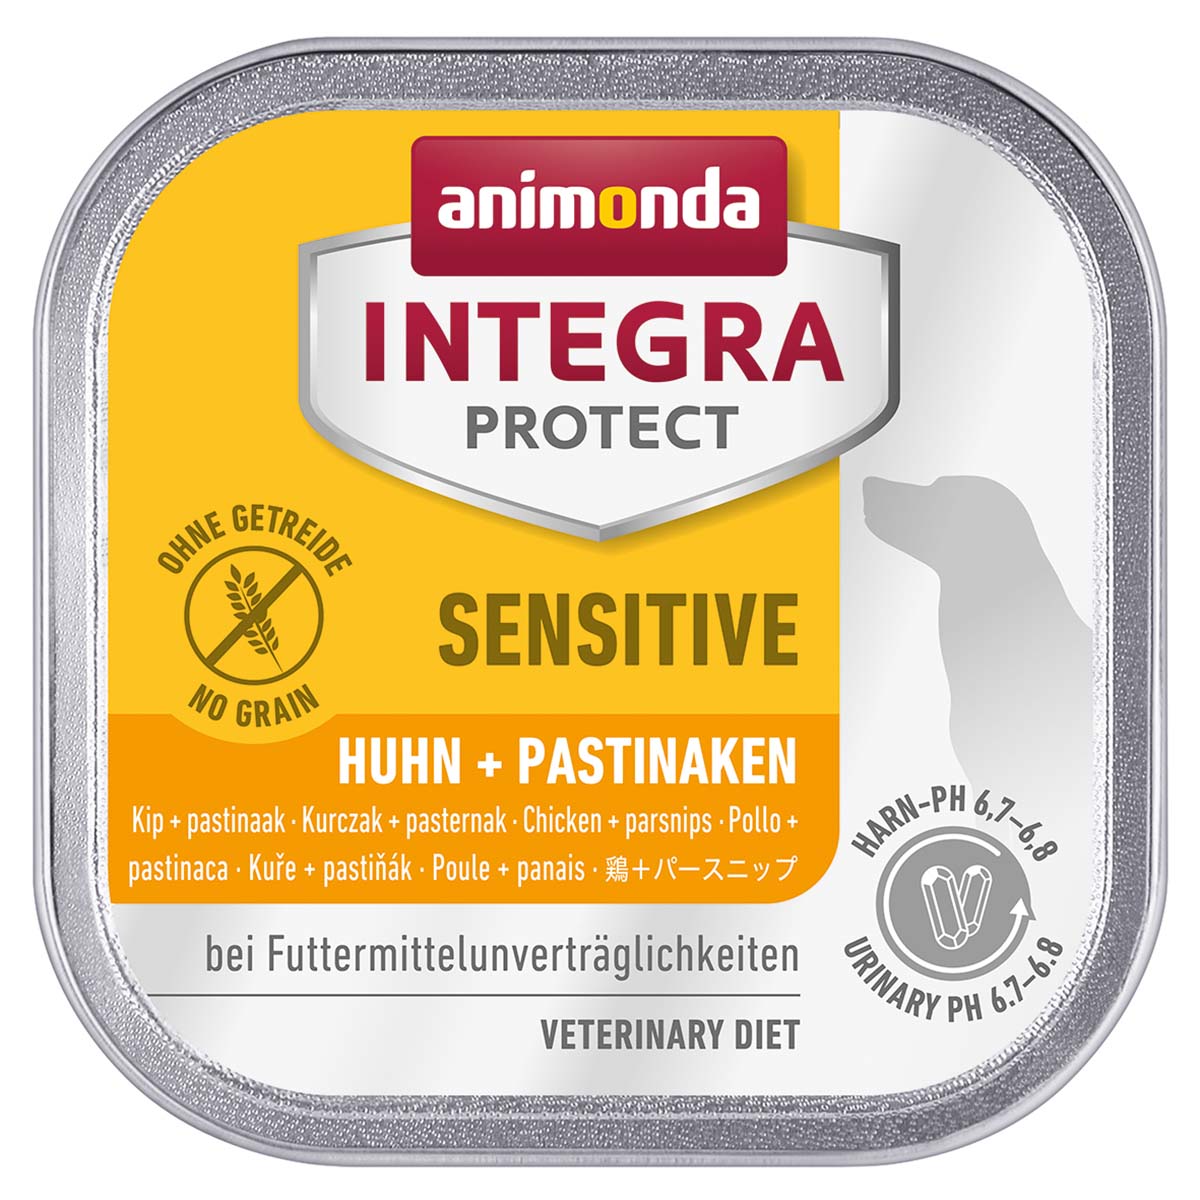 Animonda Integra Protect Sensitive s kuřecím masem a pastinákem 11x150g